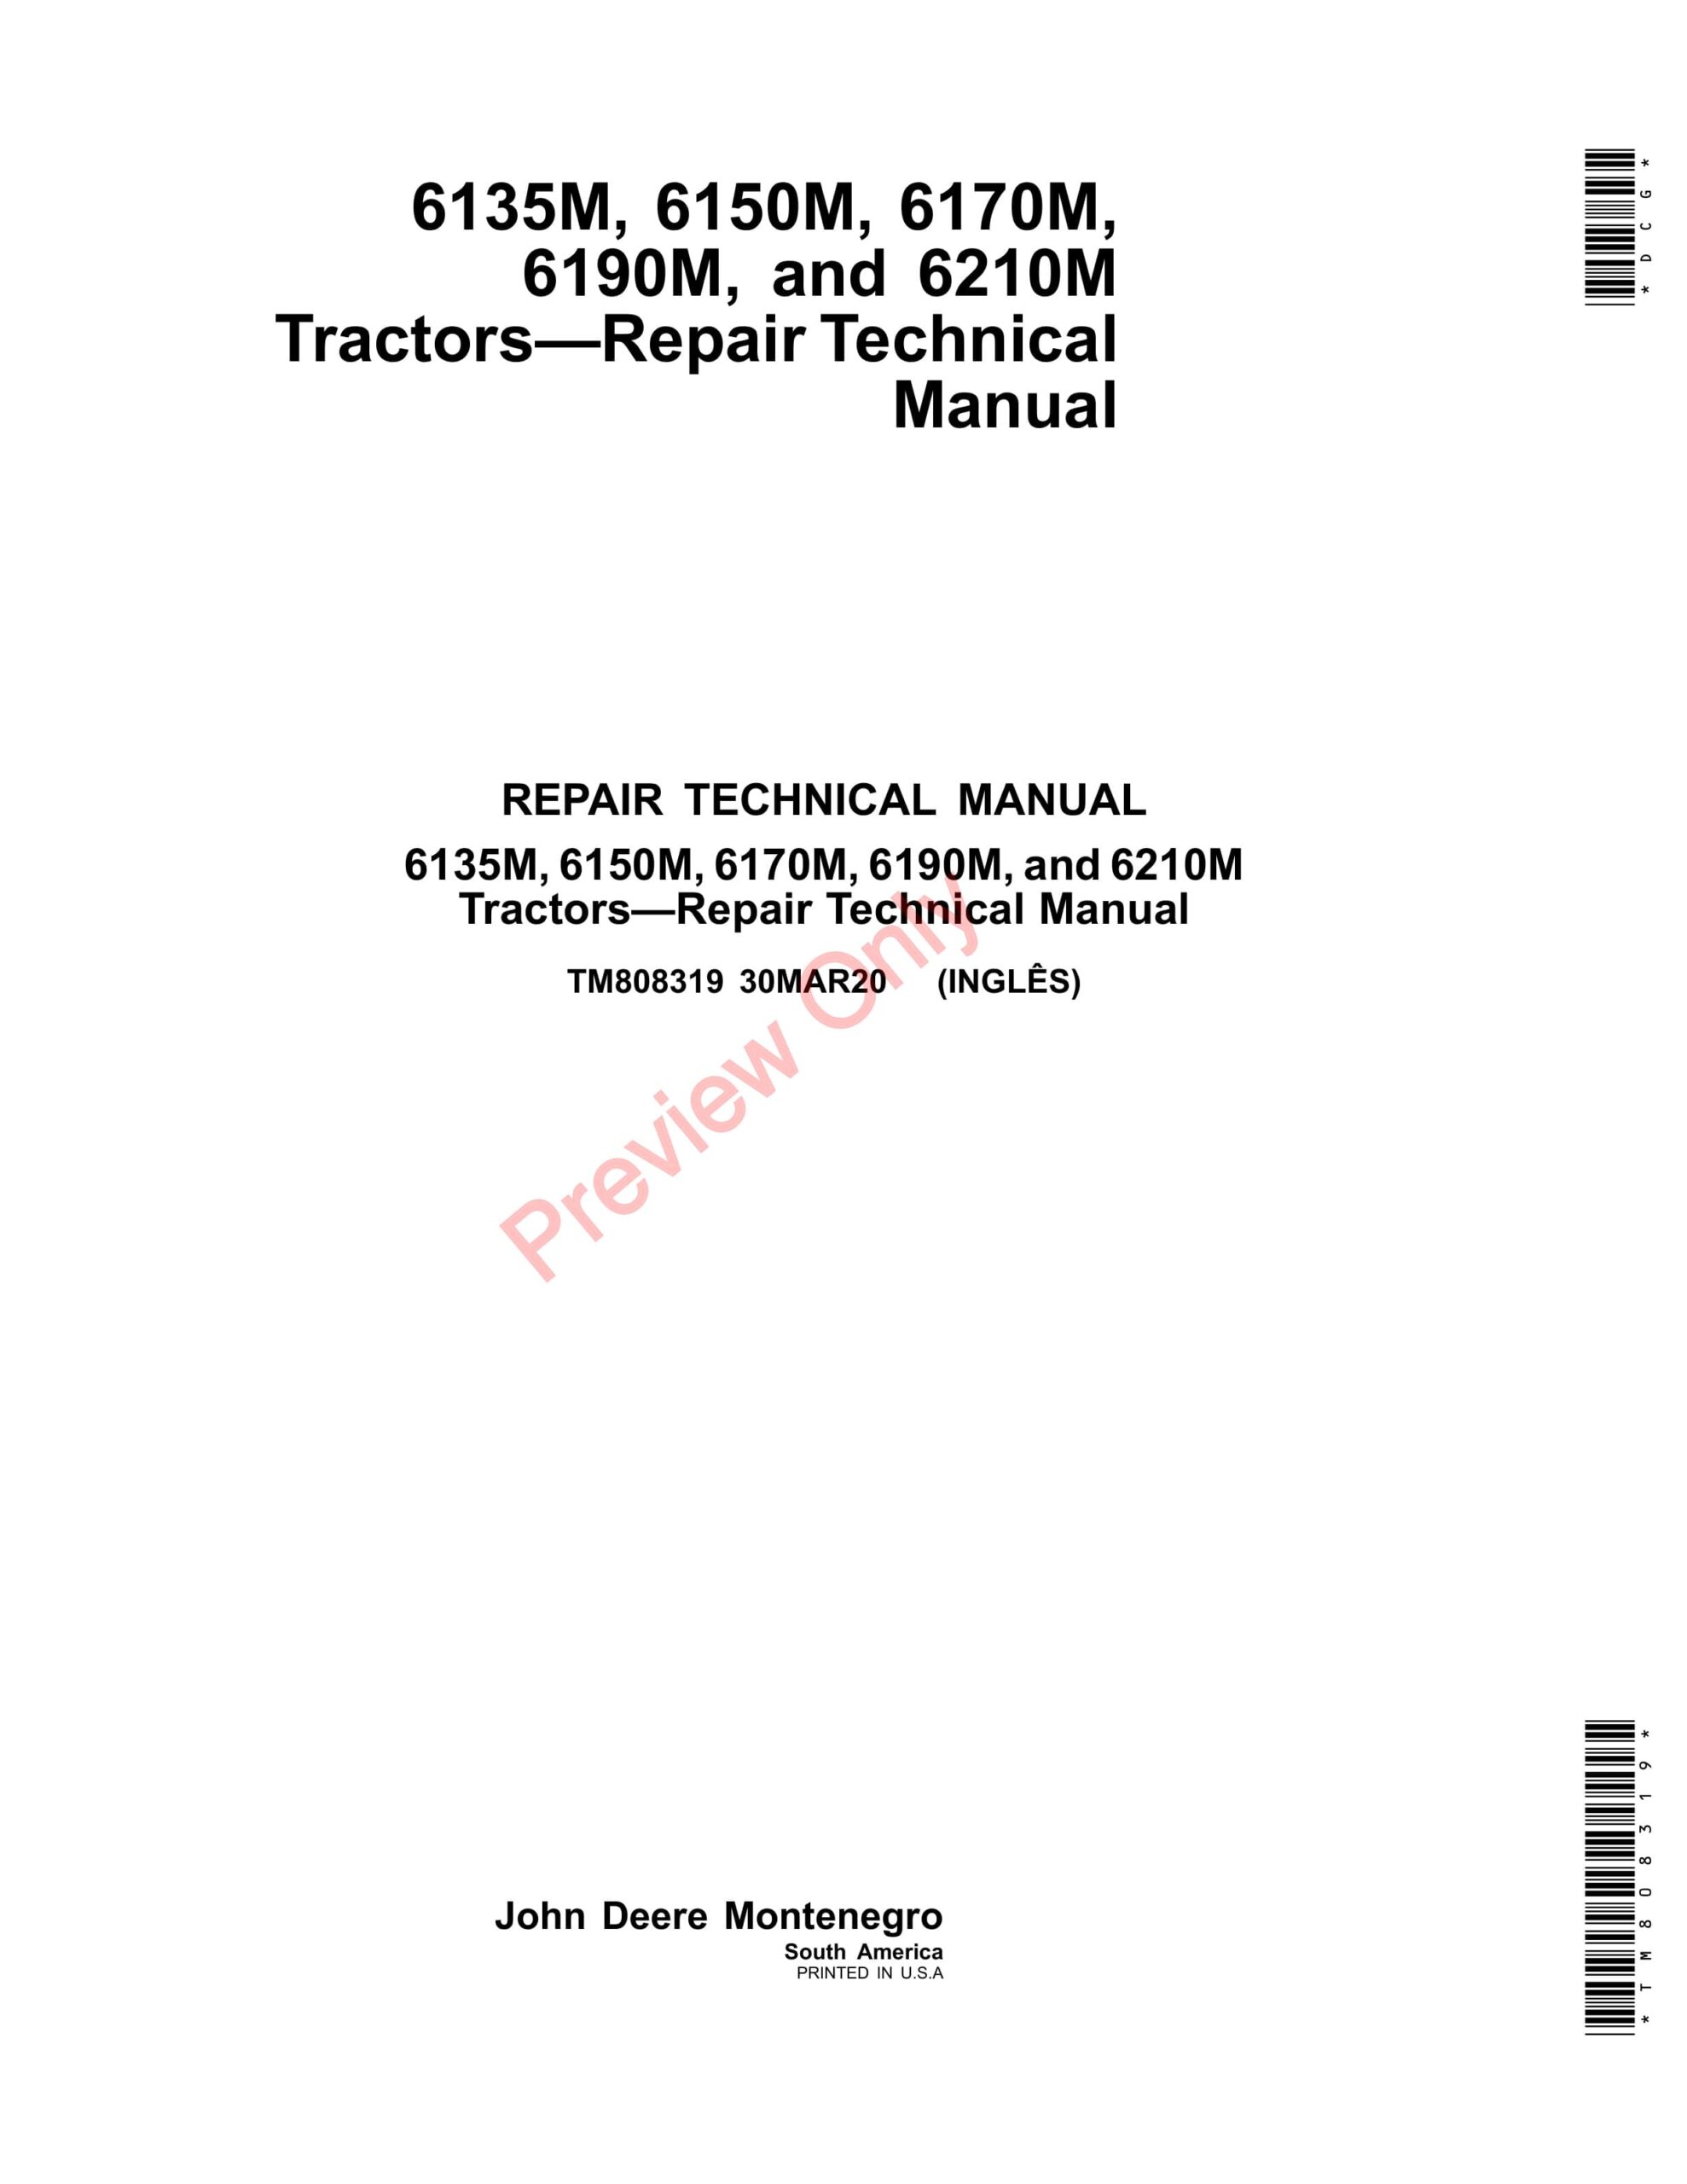 John Deere 6135M, 6150M, 6170M, 6190M, and 6210M Tractors Repair Technical Manual TM808319 30MAR20-1